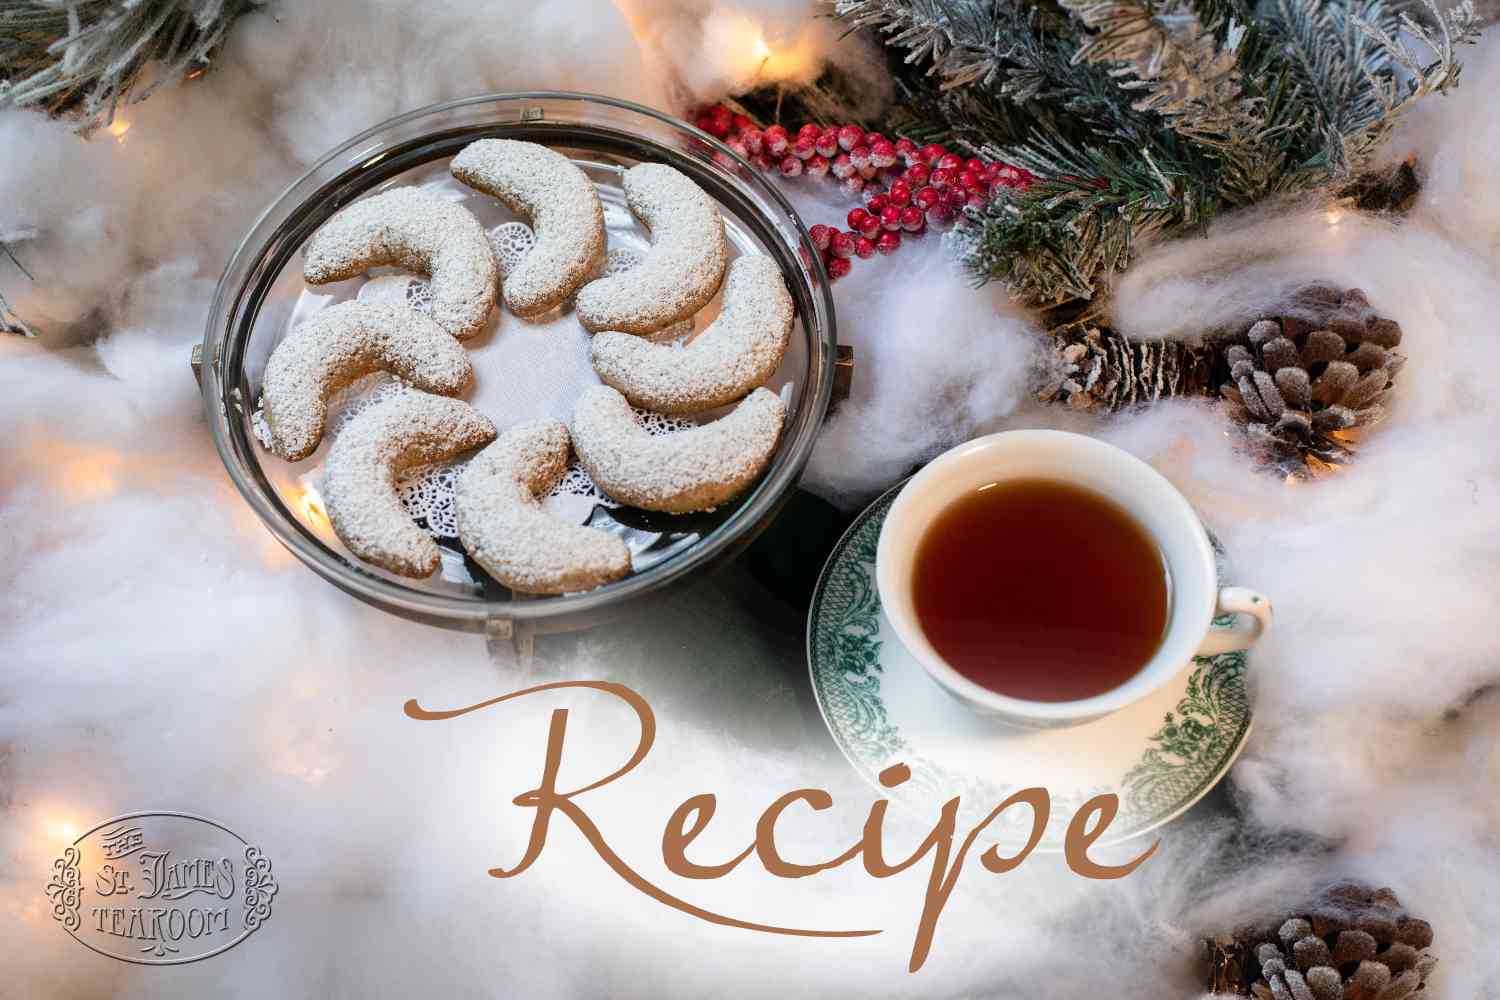 Crescent Pecan Christmas Cookies Recipe